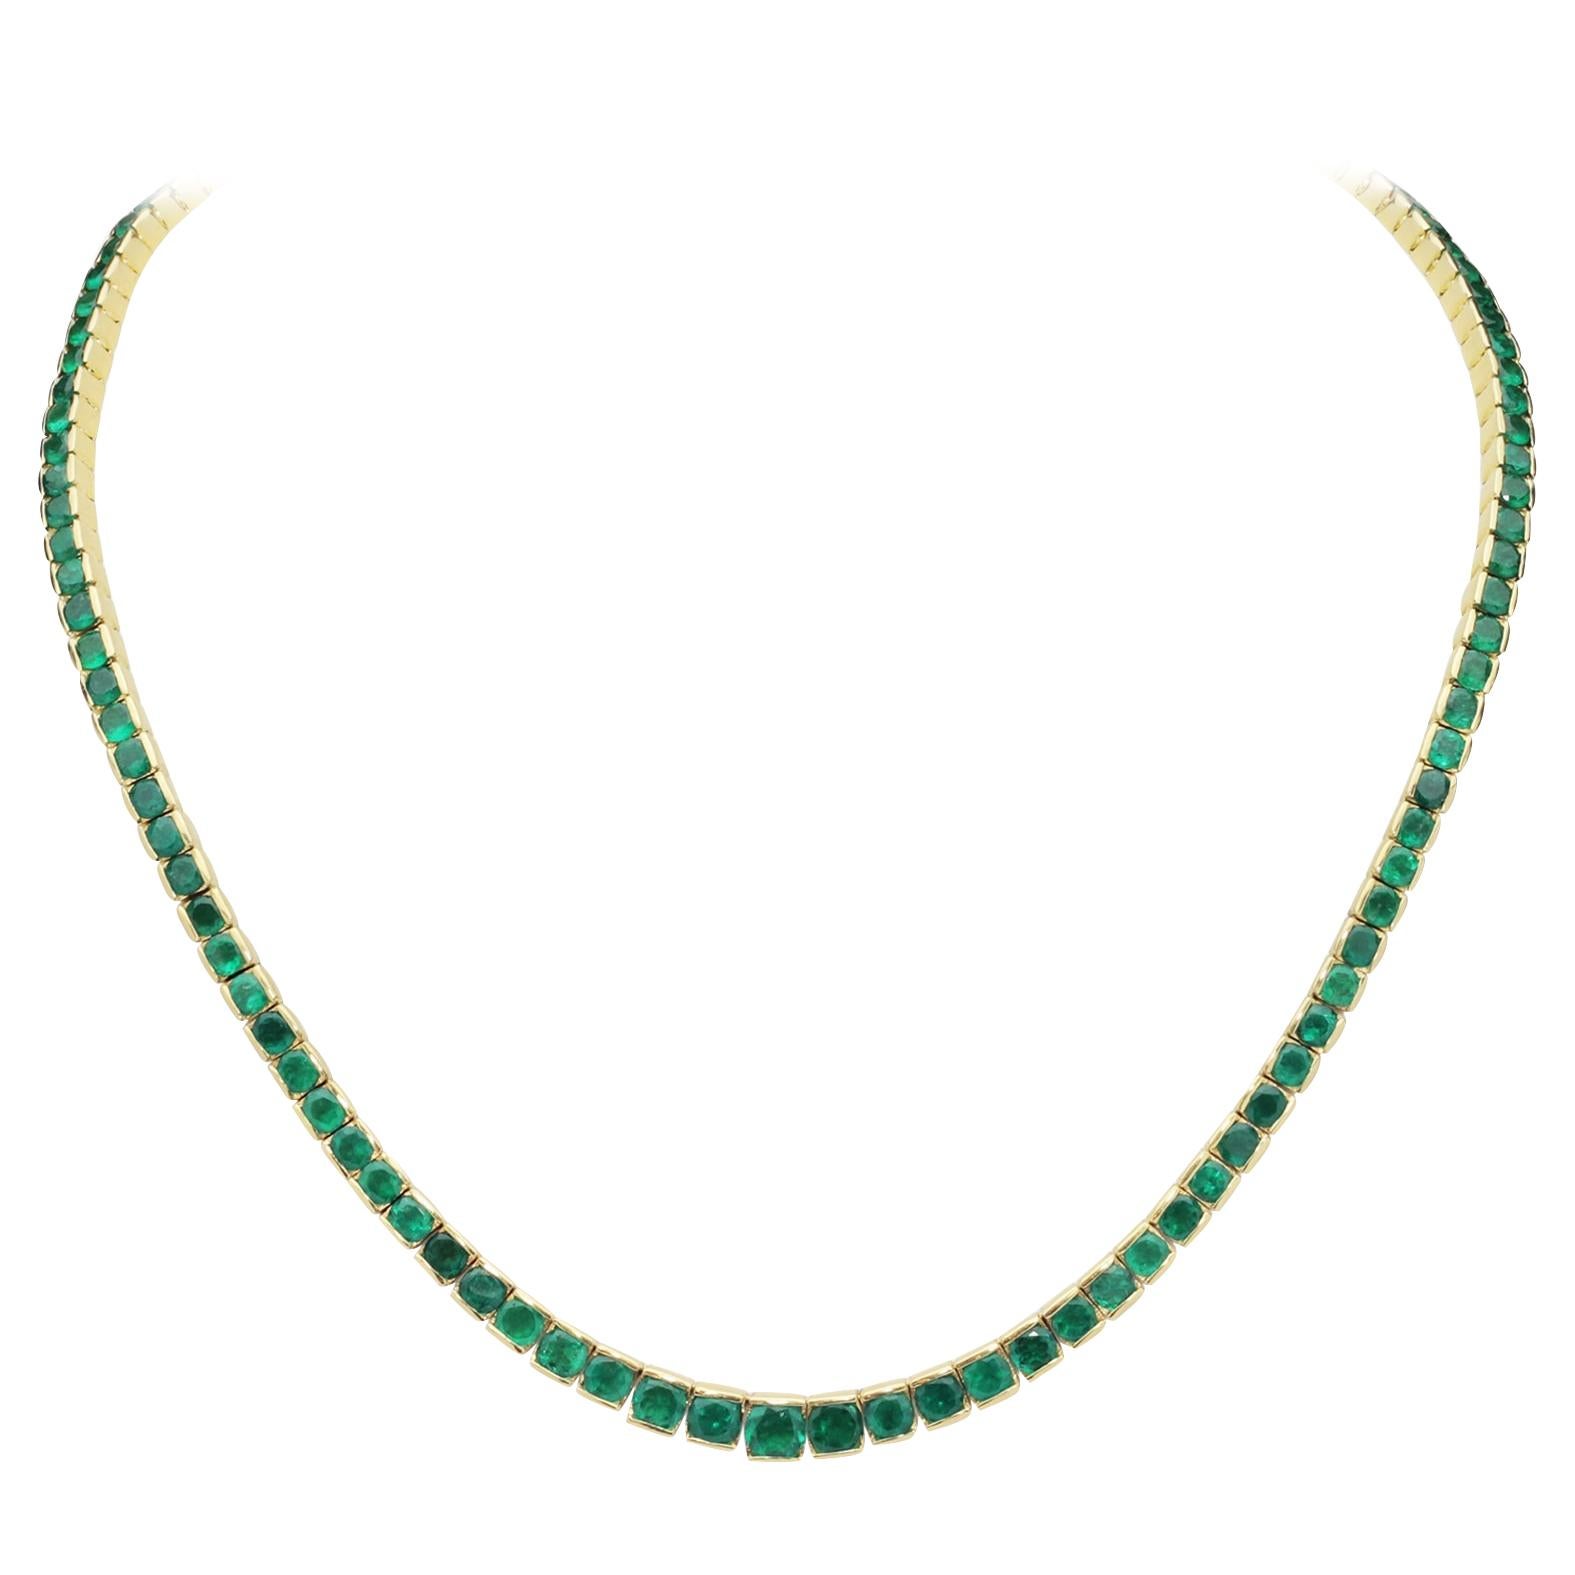 20 Carat Emerald Riviere Necklace Set in 18 Karat Gold